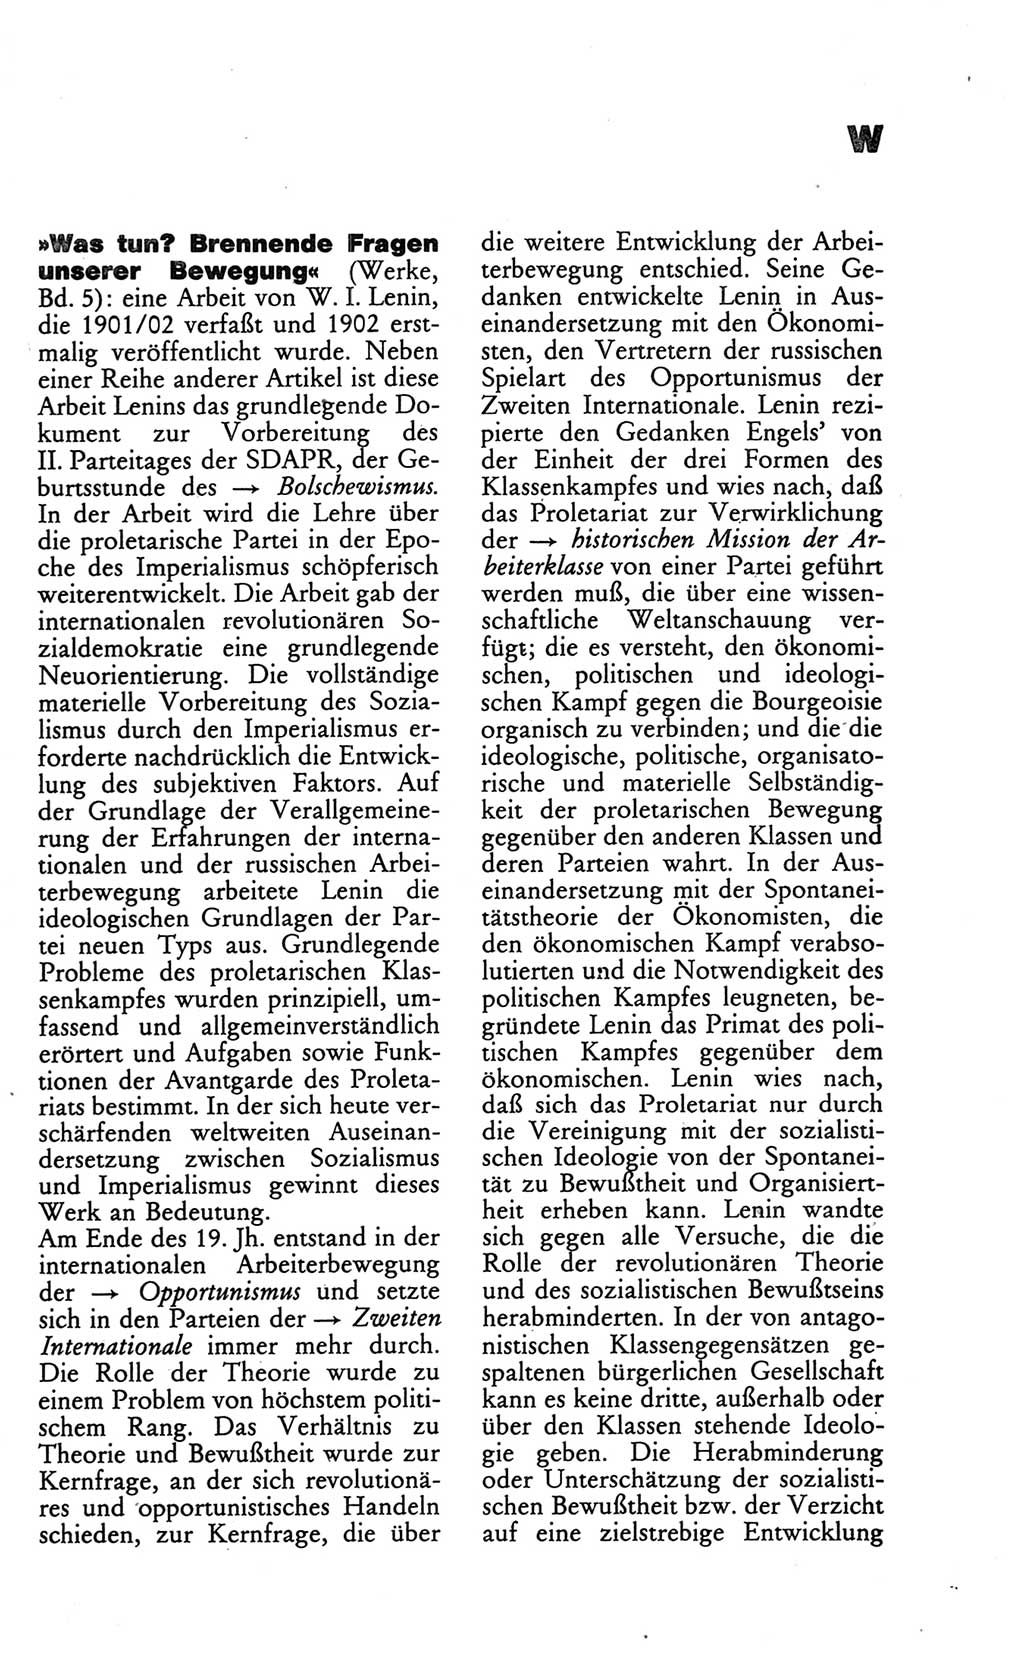 Wörterbuch des wissenschaftlichen Kommunismus [Deutsche Demokratische Republik (DDR)] 1986, Seite 407 (Wb. wiss. Komm. DDR 1986, S. 407)